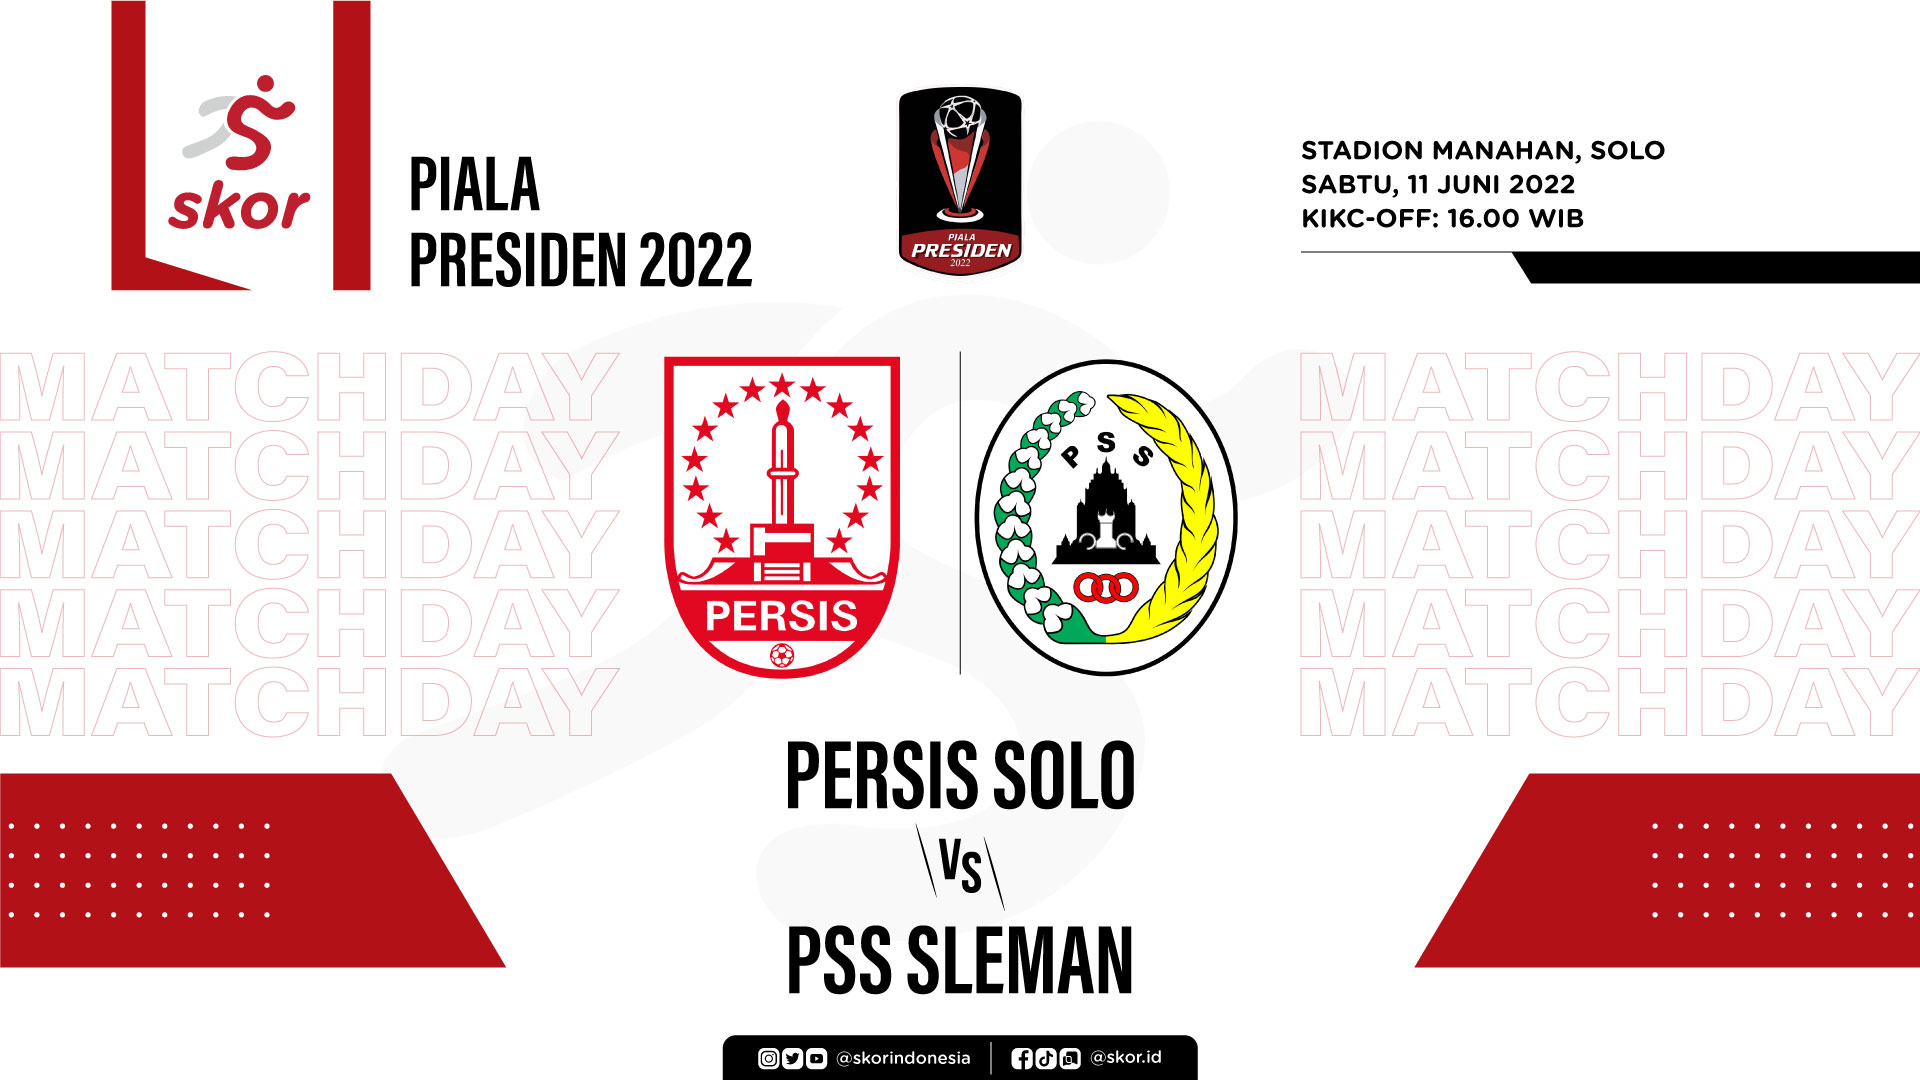 Prediksi dan Link Live Streaming Piala Presiden 2022: Persis Solo vs PSS Sleman